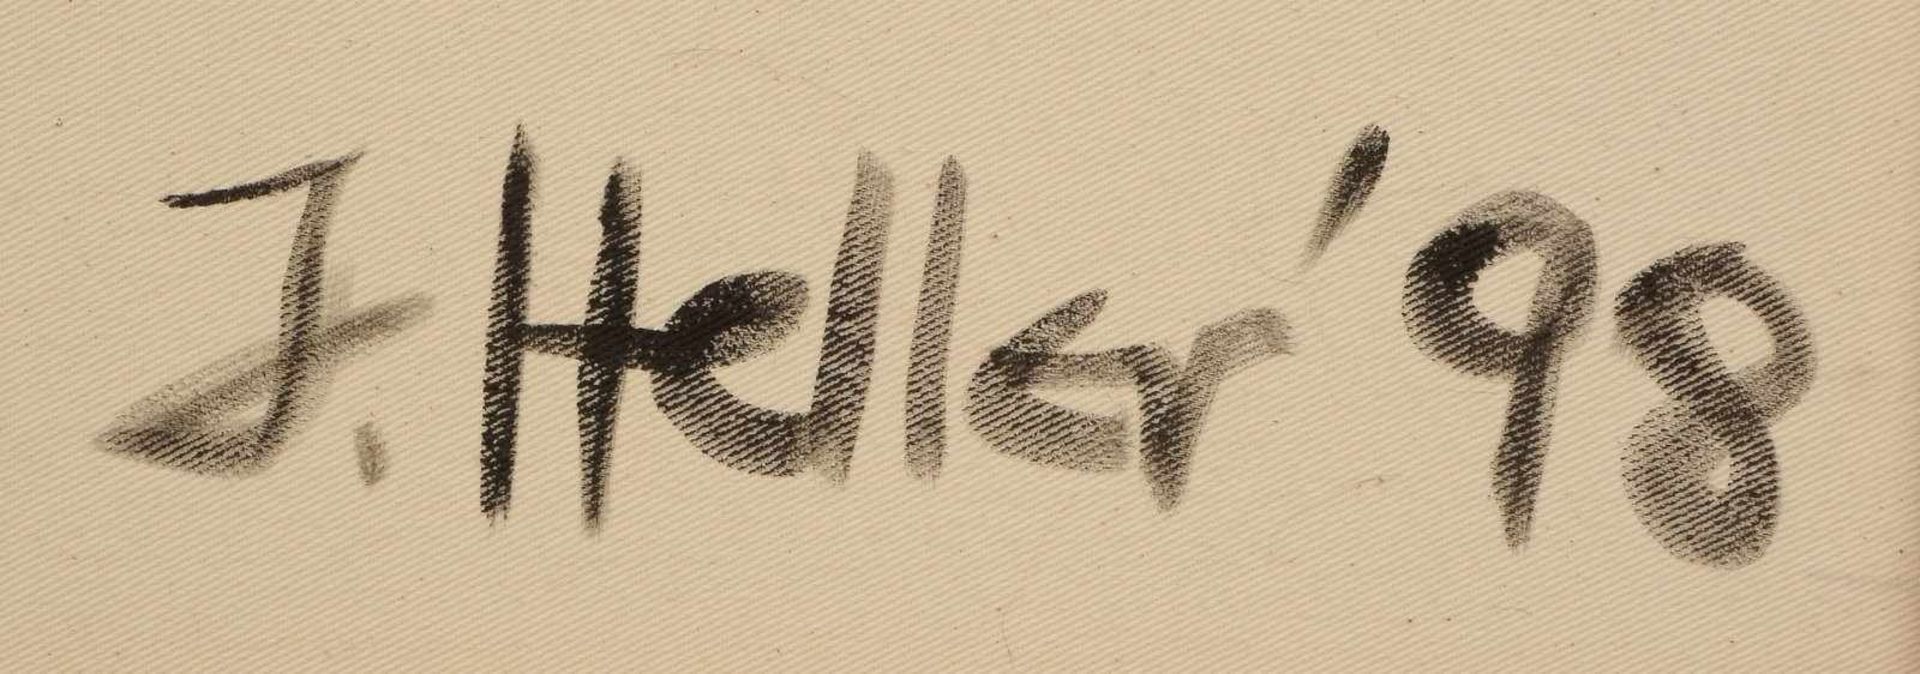 Heller, Jens, 'Silentium', Öl/Lw, verso signiert und datiert (19)'98'; Maße 91 x 90 cm"""" - Bild 3 aus 3